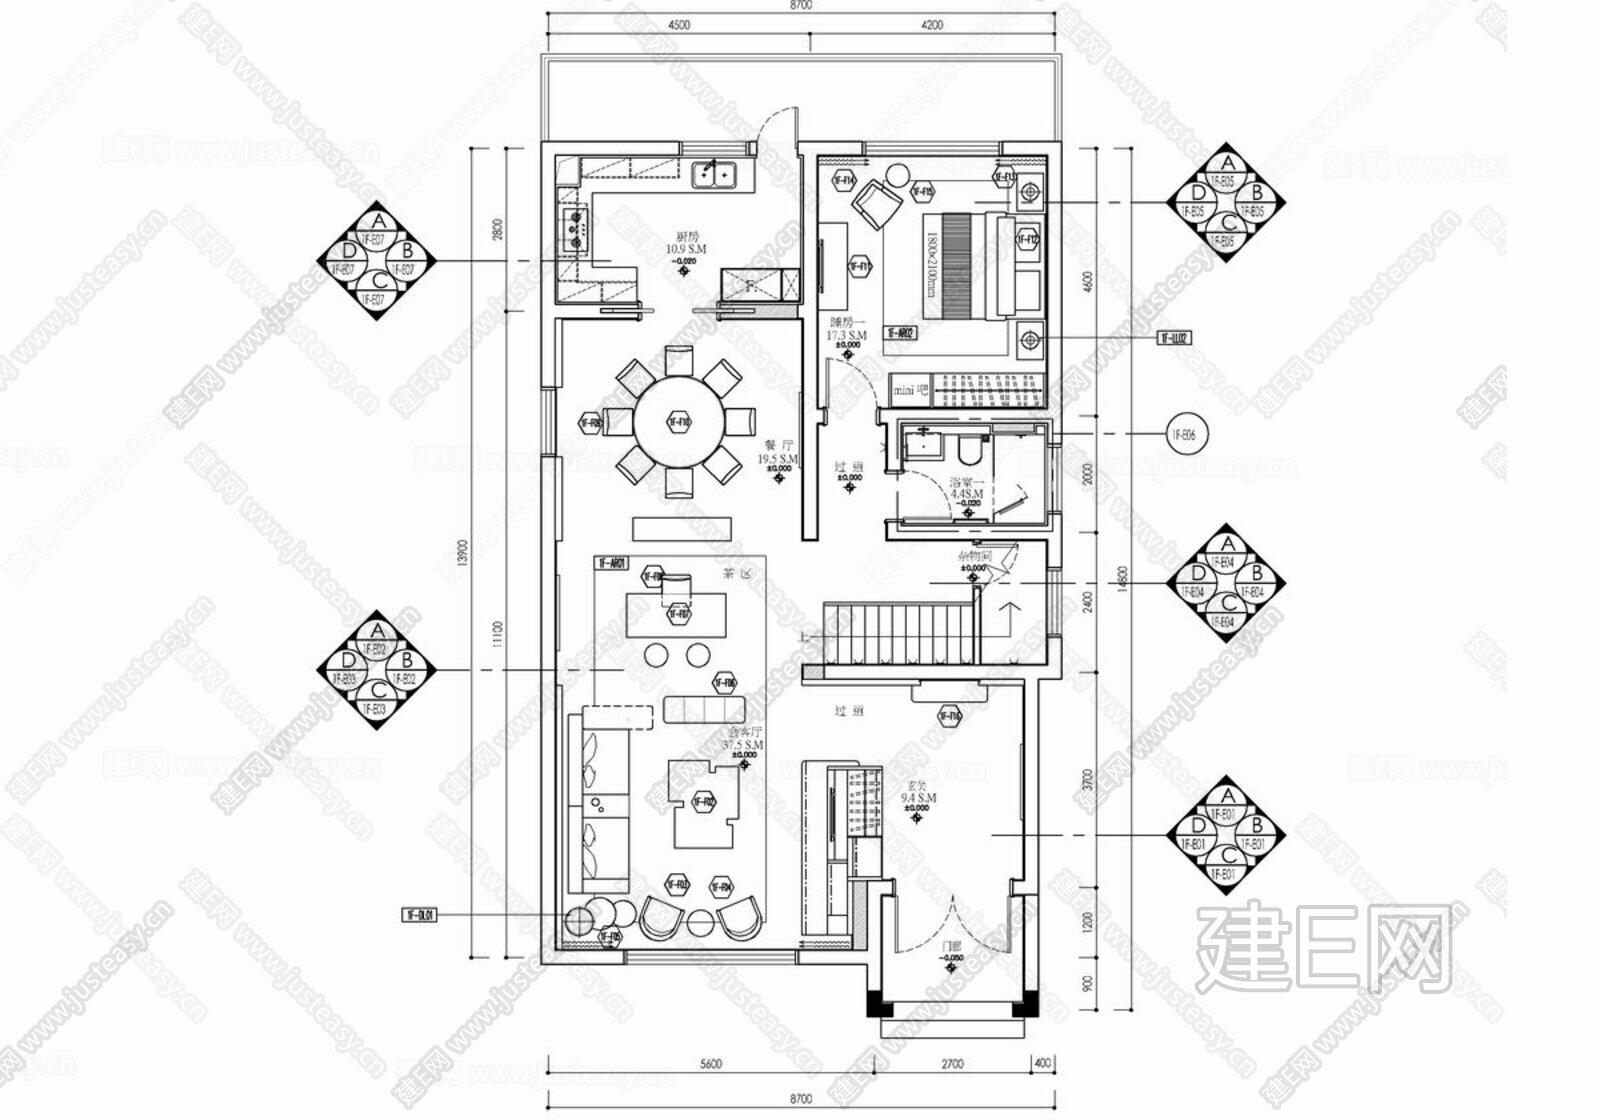 400㎡三层别墅|CAD施工图cad施工图